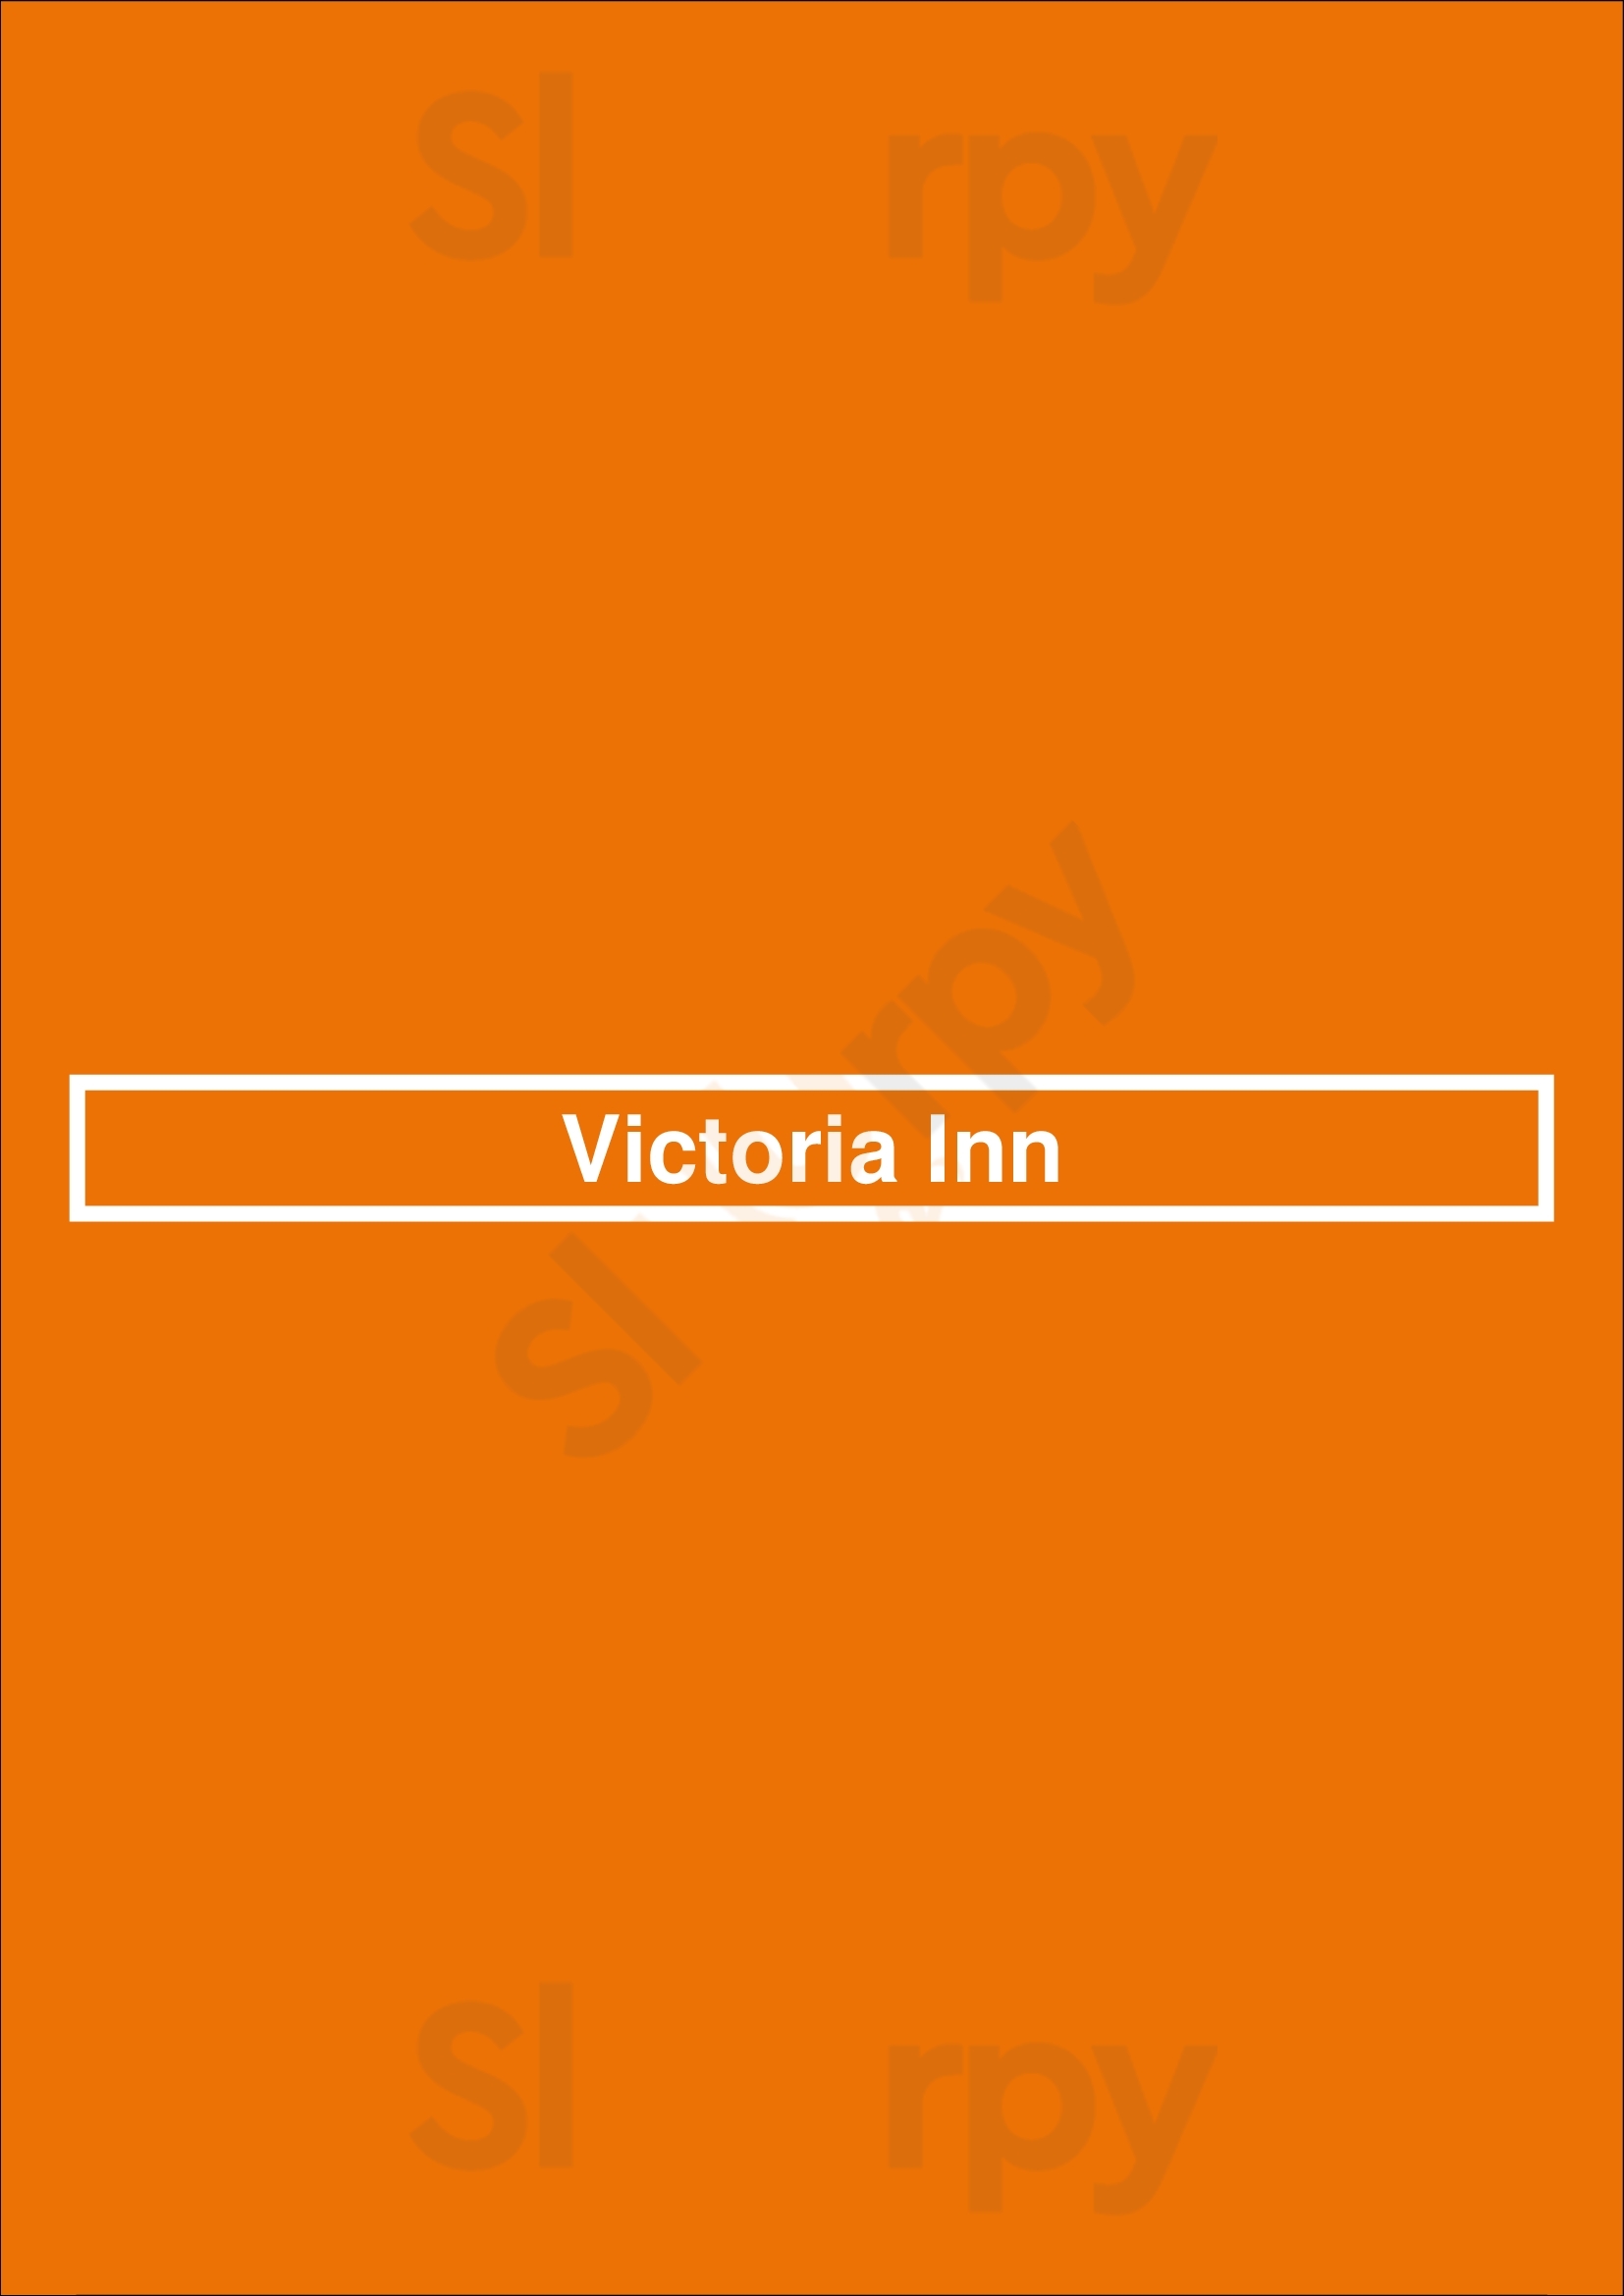 Victoria Inn Williamstown Menu - 1